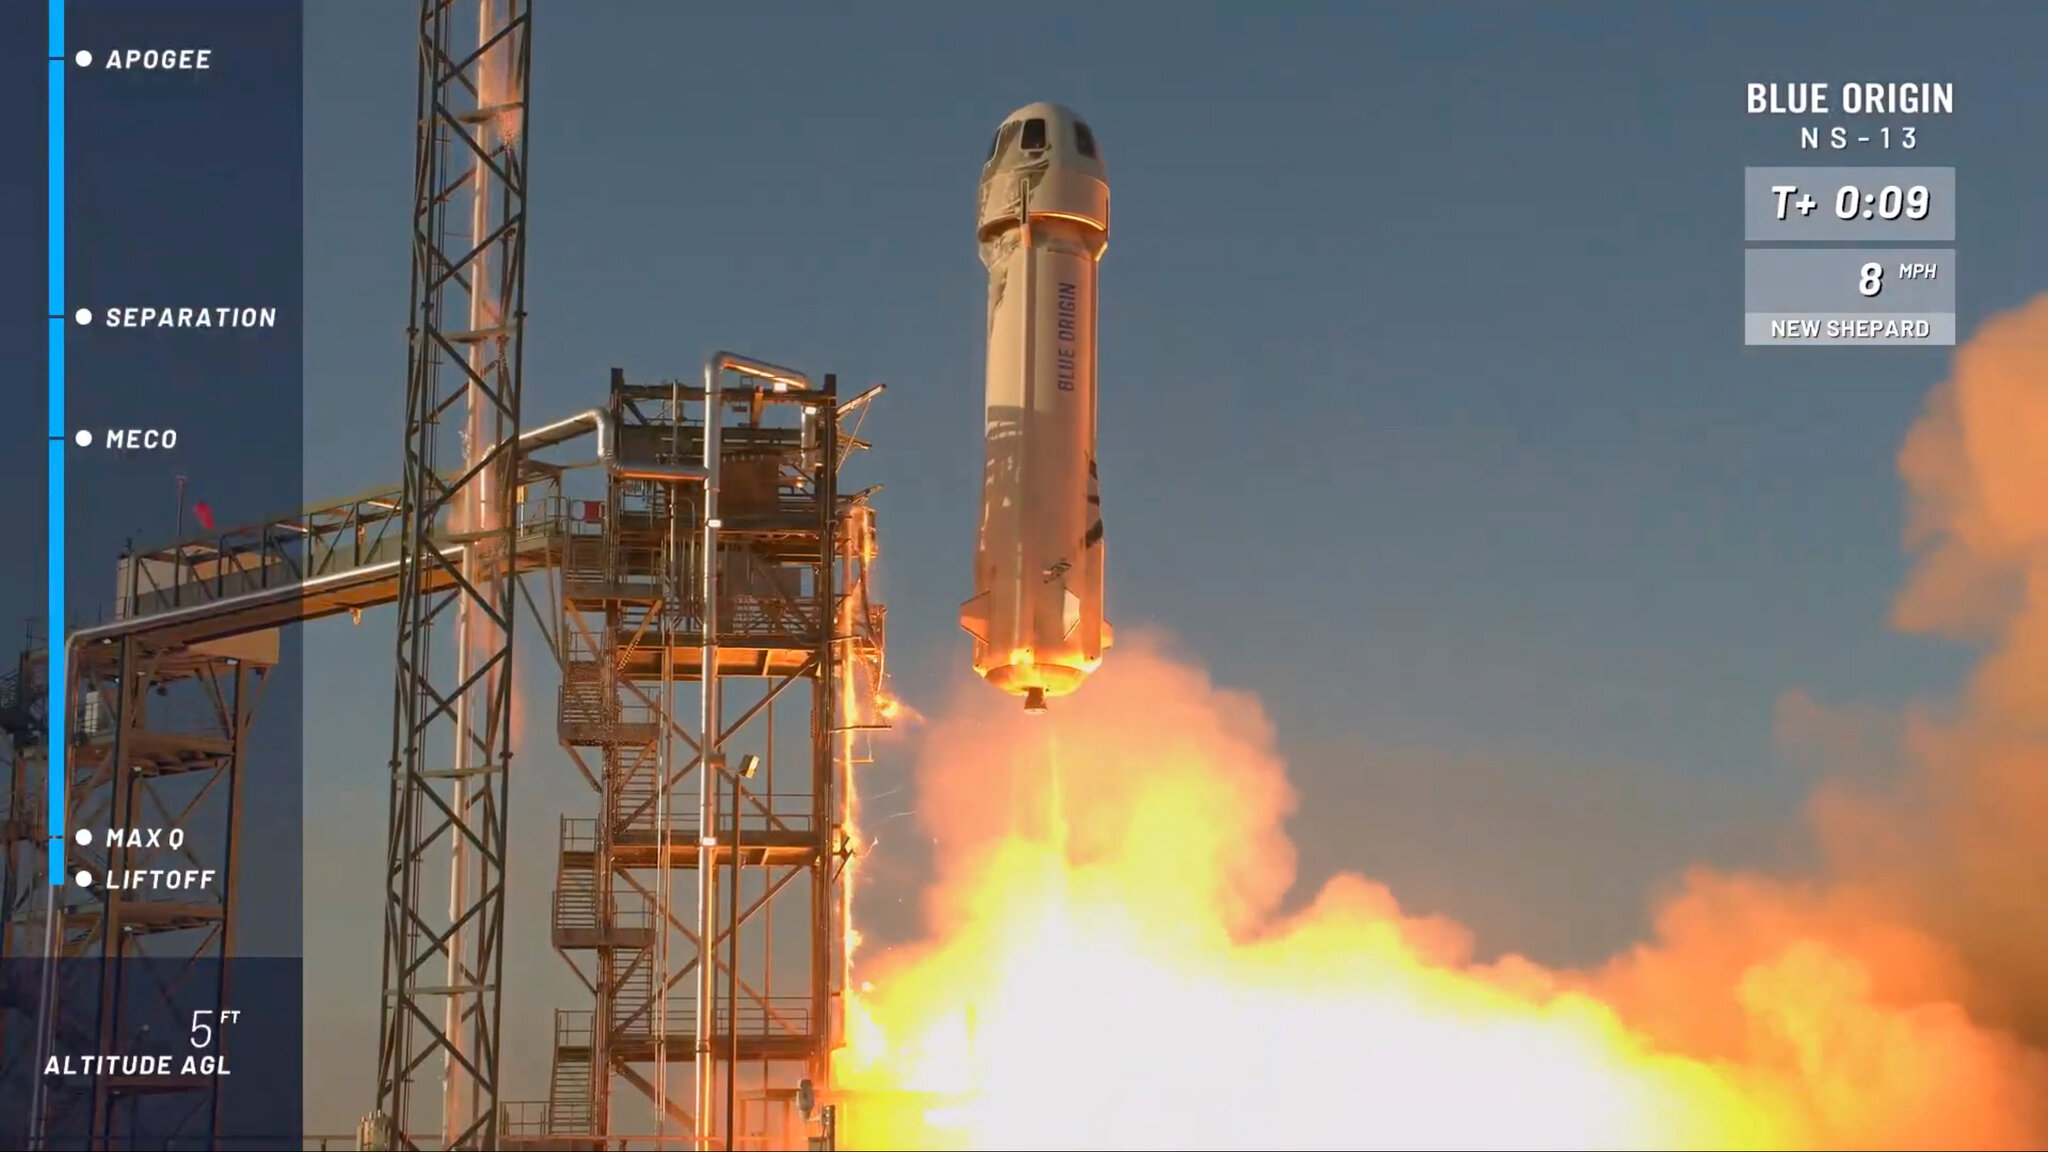 Jeff Bezos’ Blue Origin rocket crashes minutes after lift-off